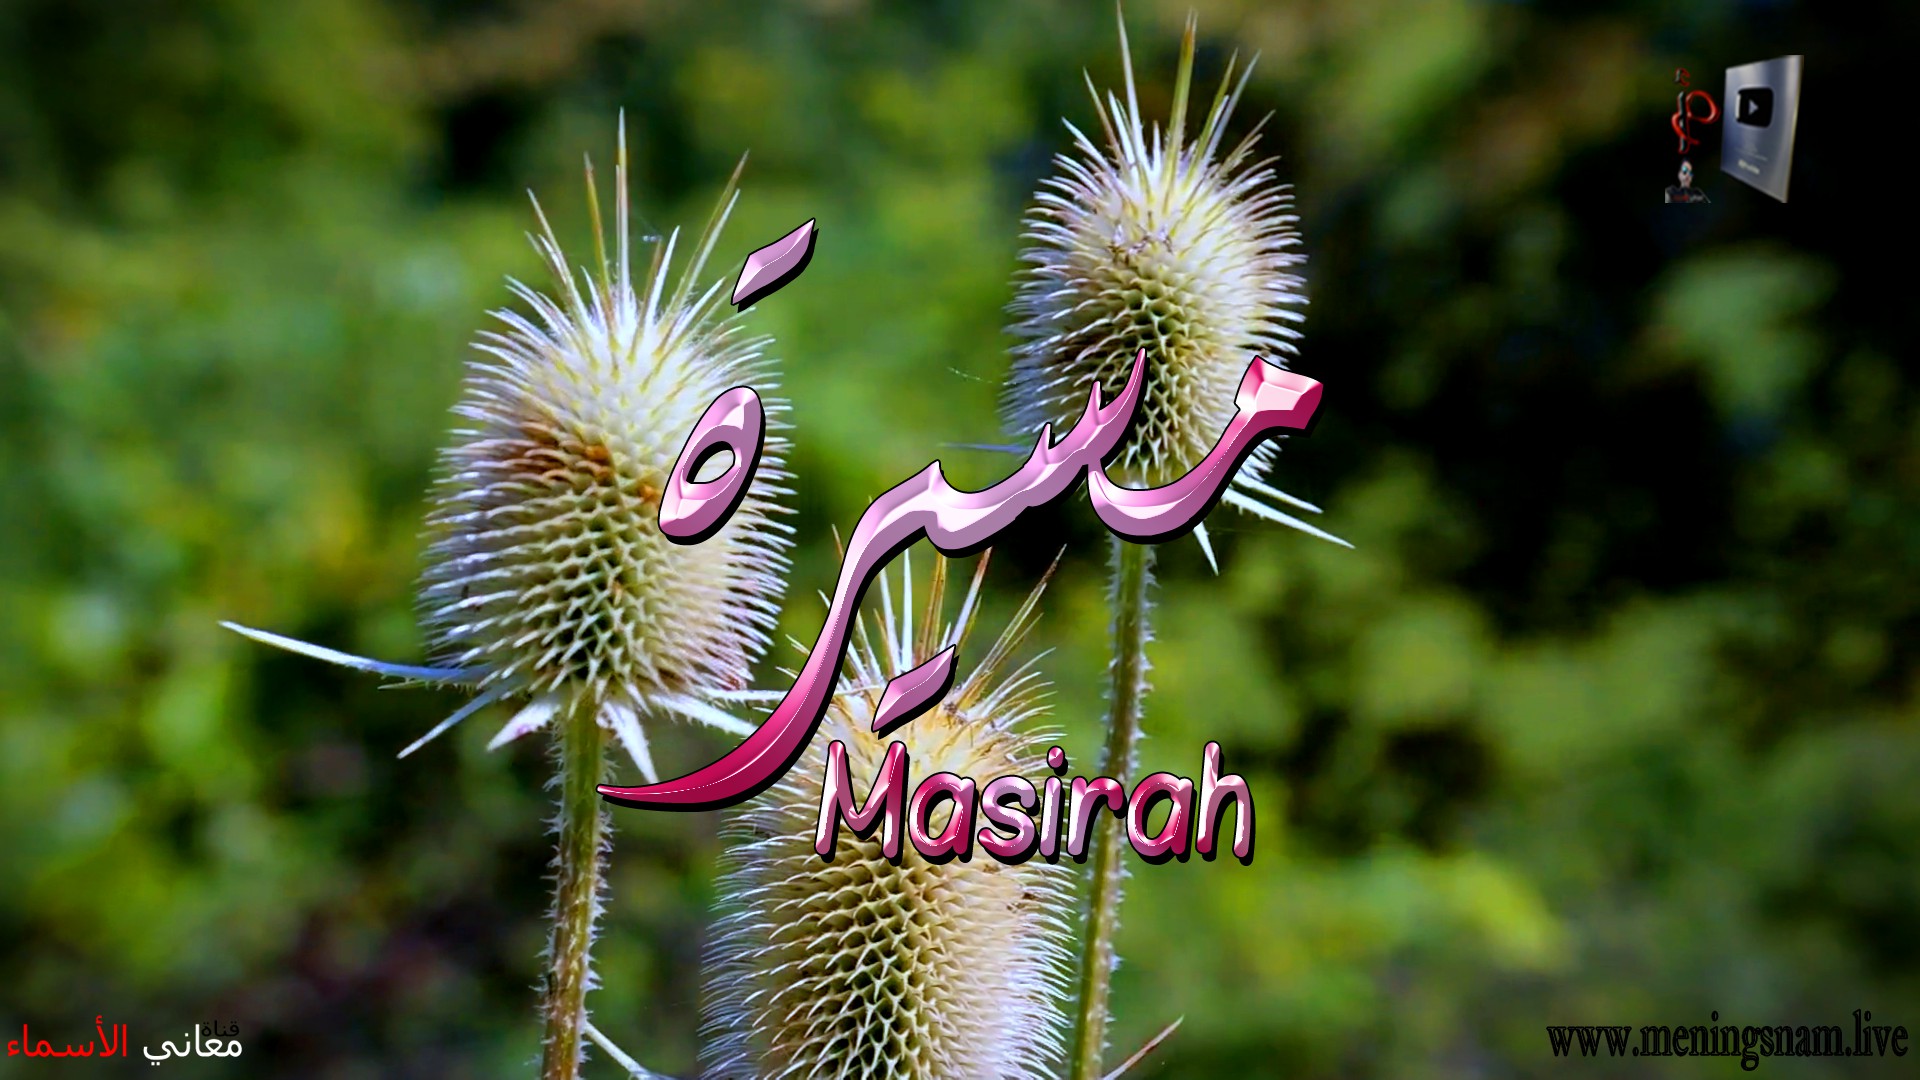 معنى اسم, مسيرة, وصفات, حاملة, هذا الاسم, Masirah,